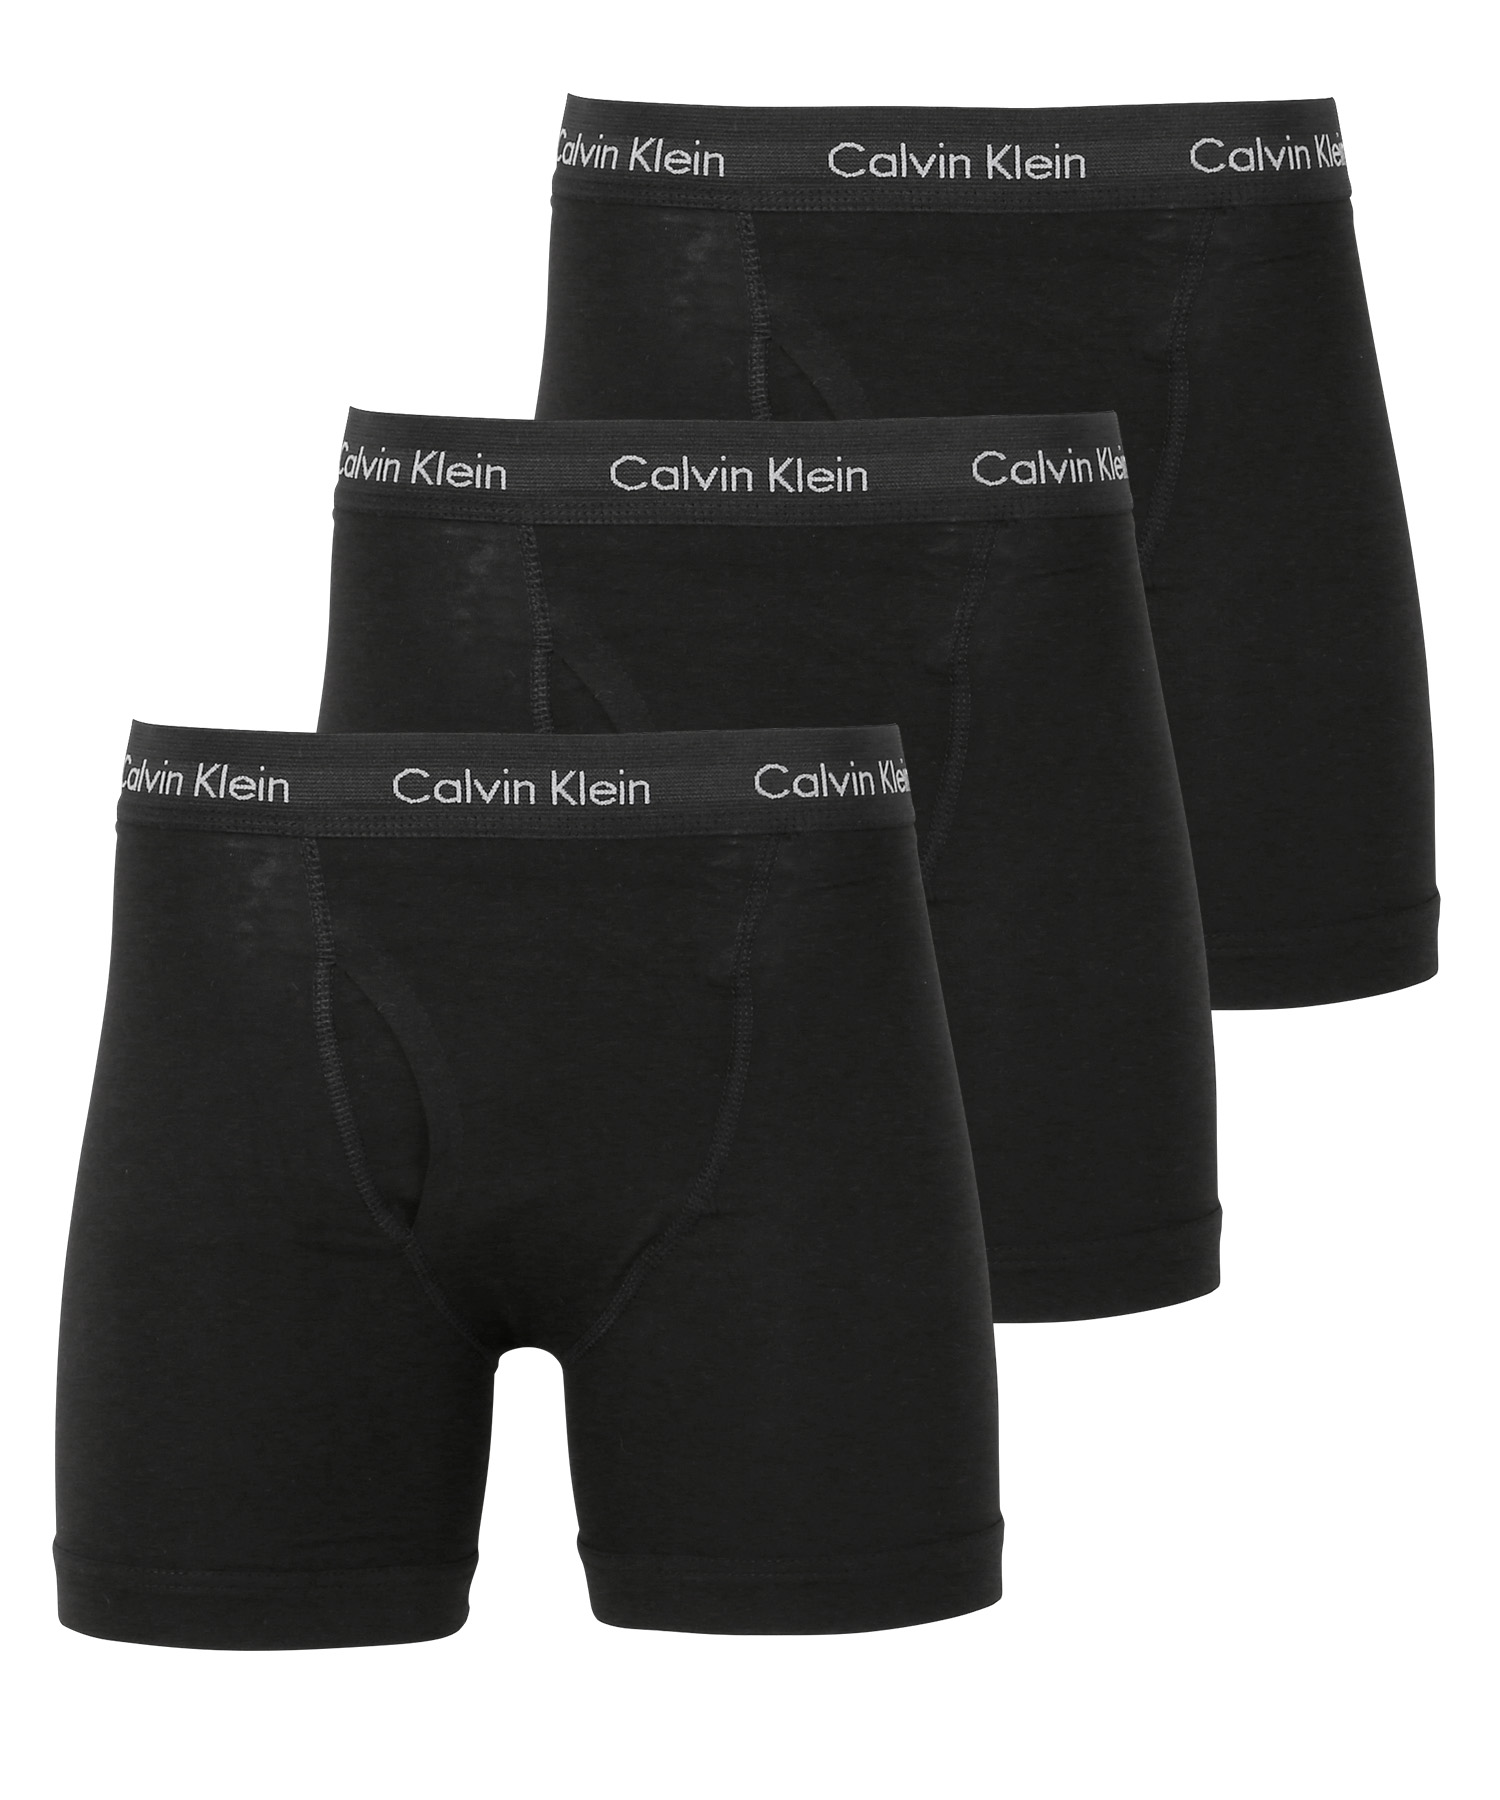 ワケあり カルバンクライン ボクサーパンツ 3枚セット メンズ ロング Calvin Klein アンダーウェア コットン 綿 アウトレット 前開き  CK 高級 ブランド メール便